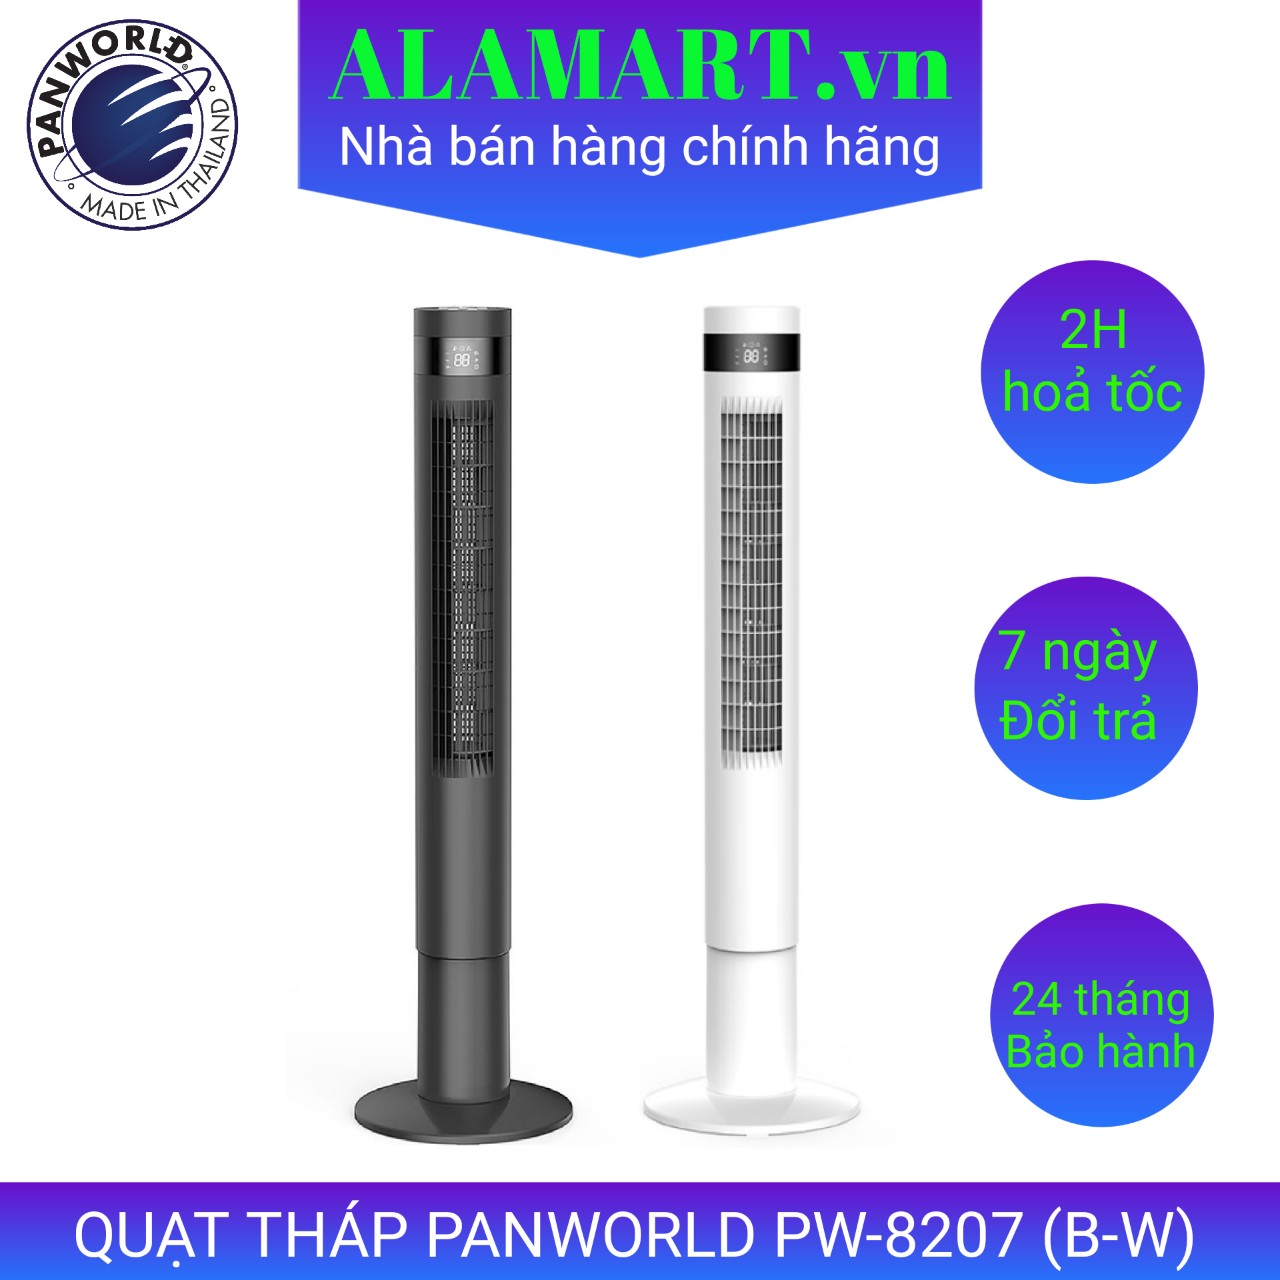 Quạt Tháp Panworld PW8207 (B/W) cao cấp chính hãng Thái Lan, hoạt động êm ái - bảo hành 2 năm